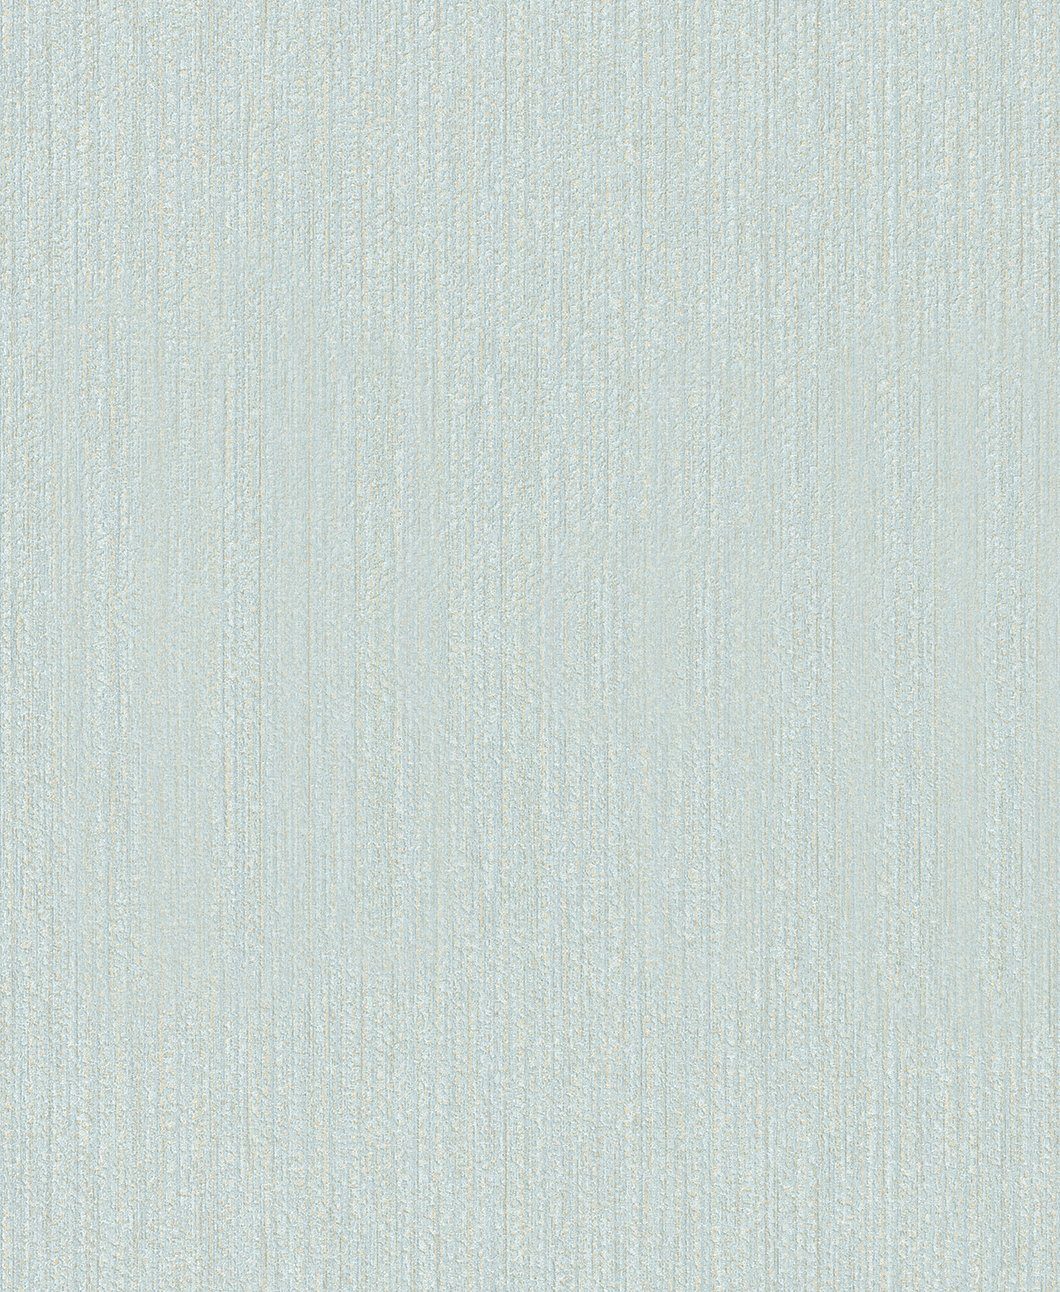 x SCHÖNER realistisch, WOHNEN-Kollektion Meter 0,53 10,05 Vliestapete, hellblau